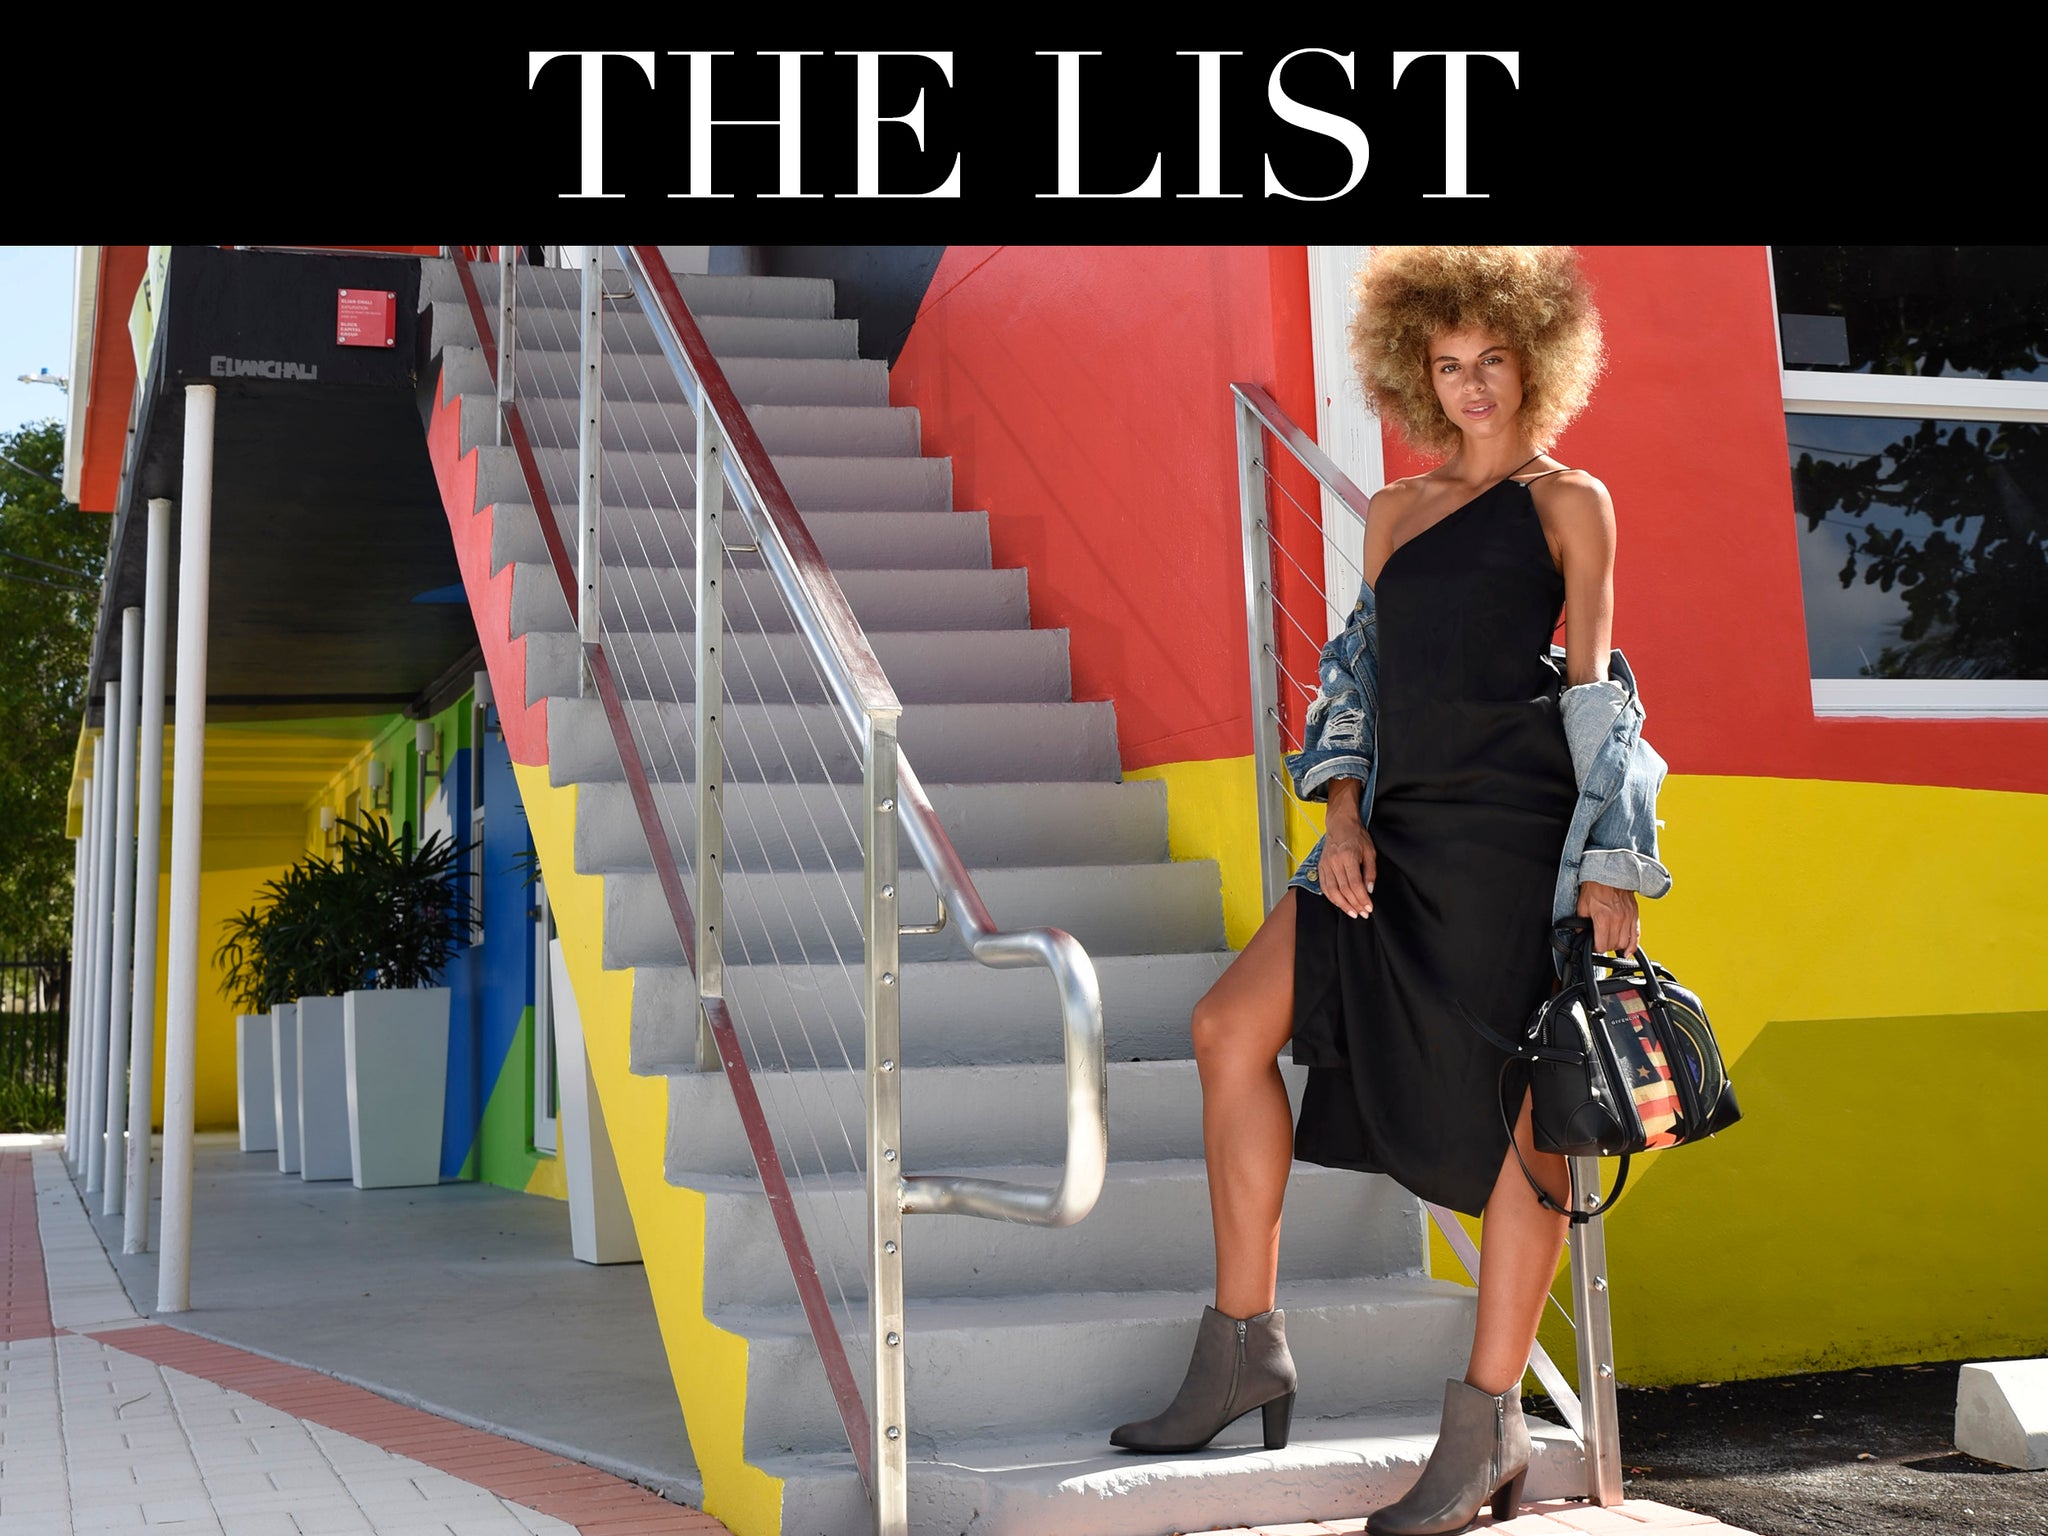 The List